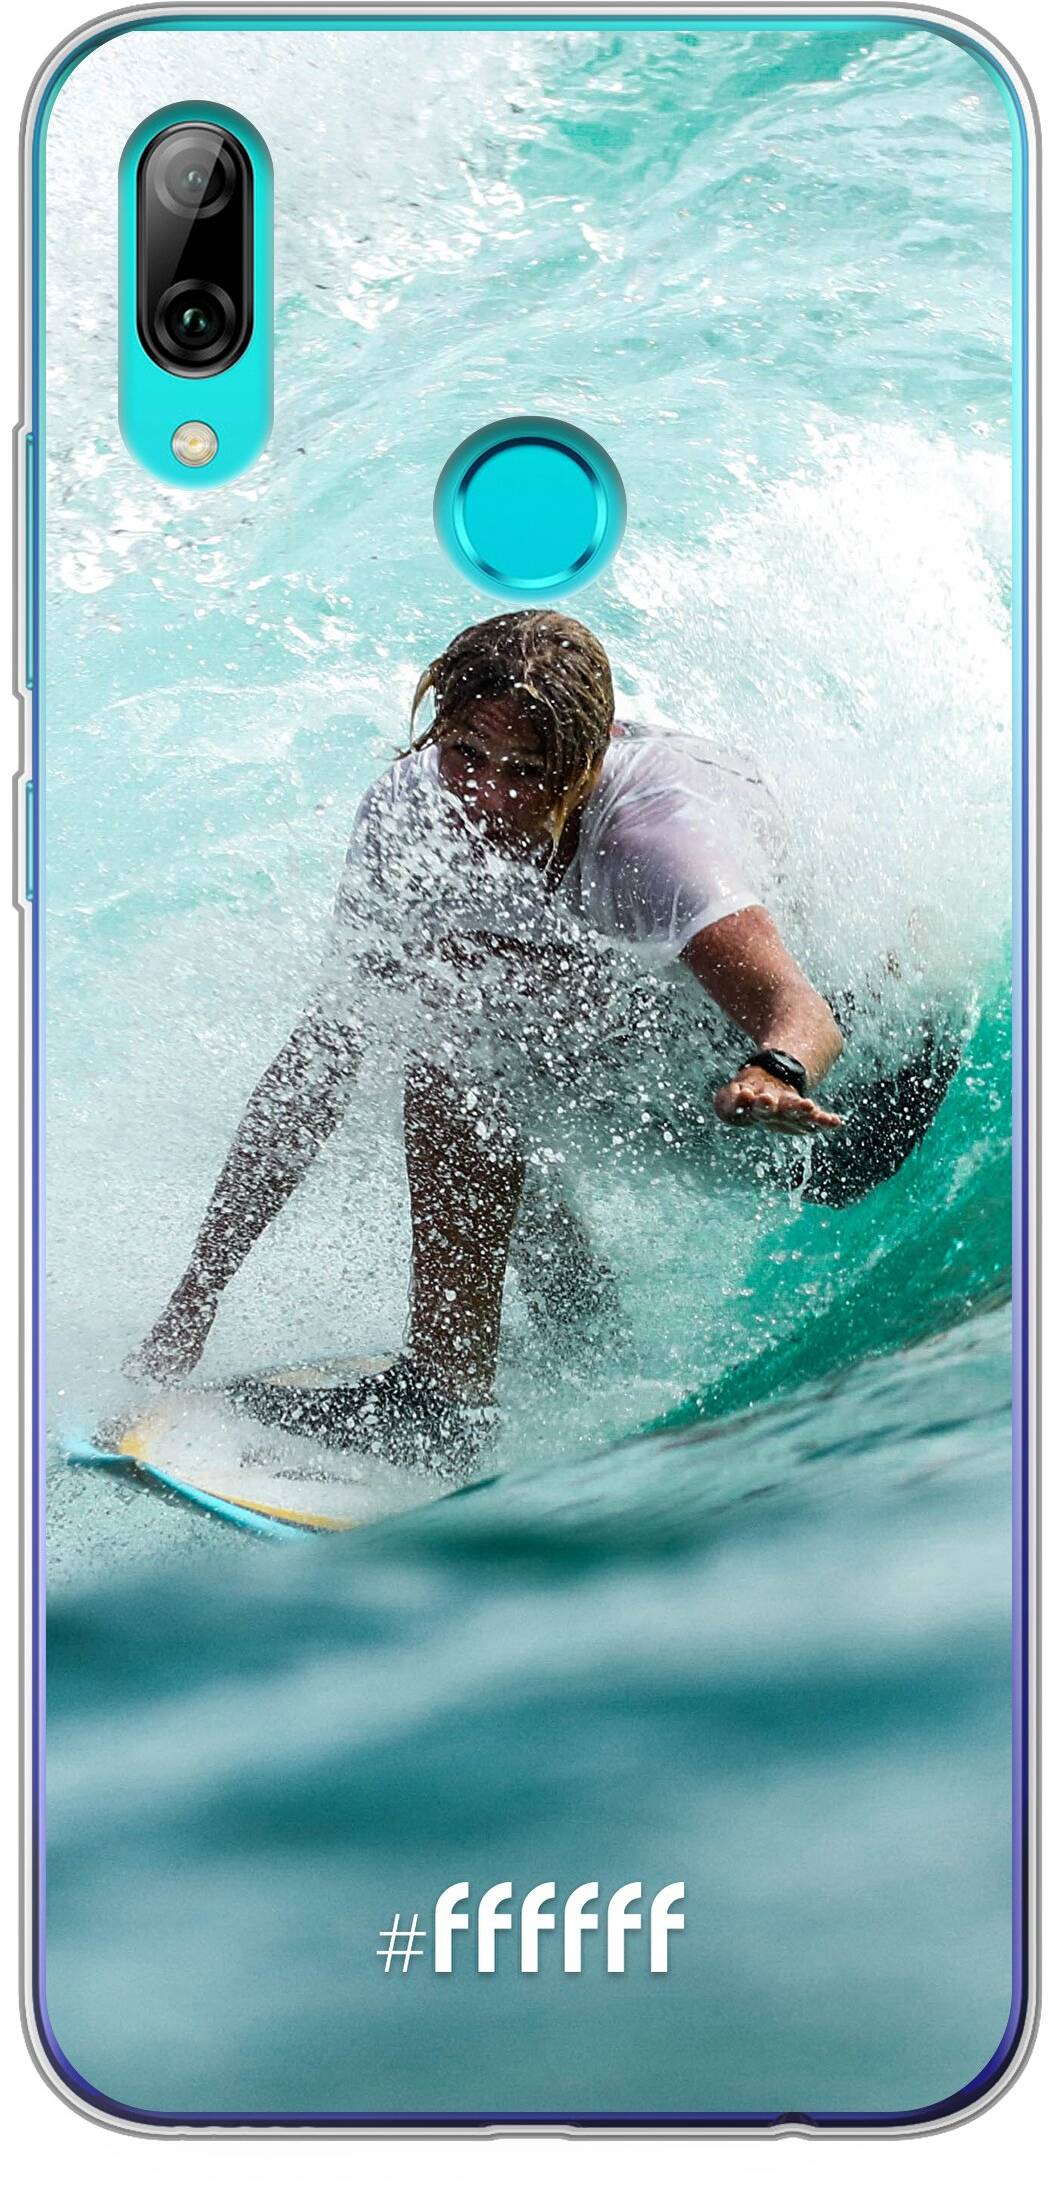 Boy Surfing P Smart (2019)